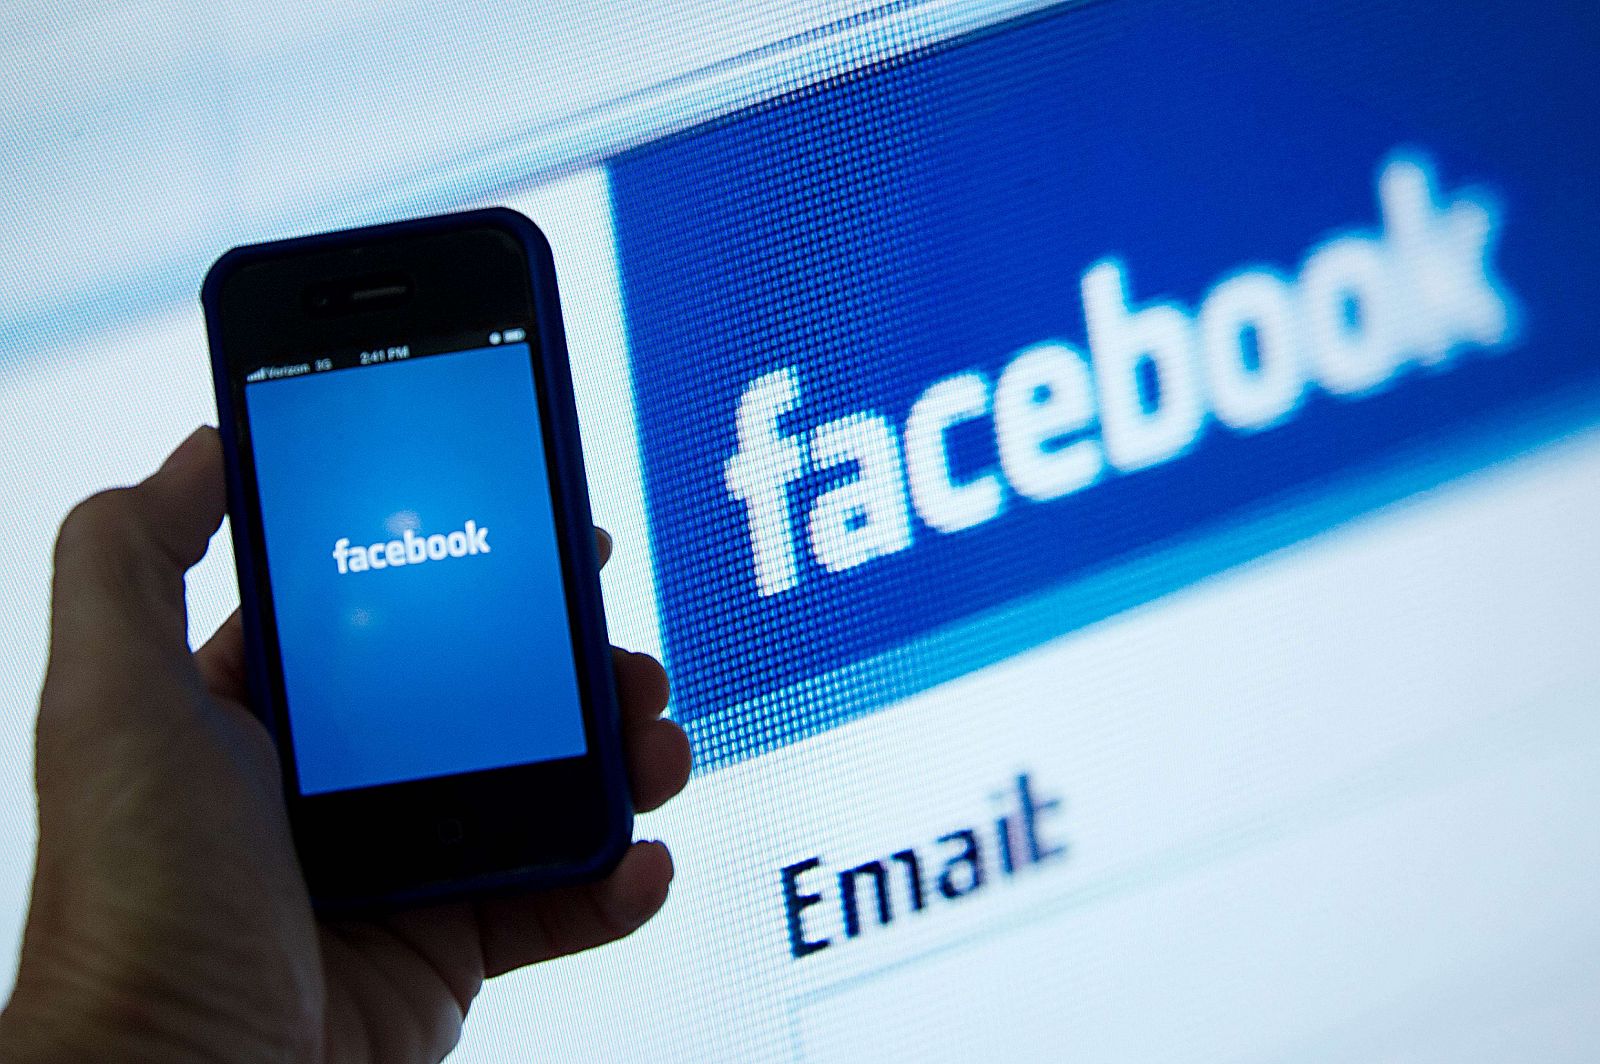 Imagen tomada en Washington con un iPhone con la aplicación de Facebook abierta frente al logo de la red social.